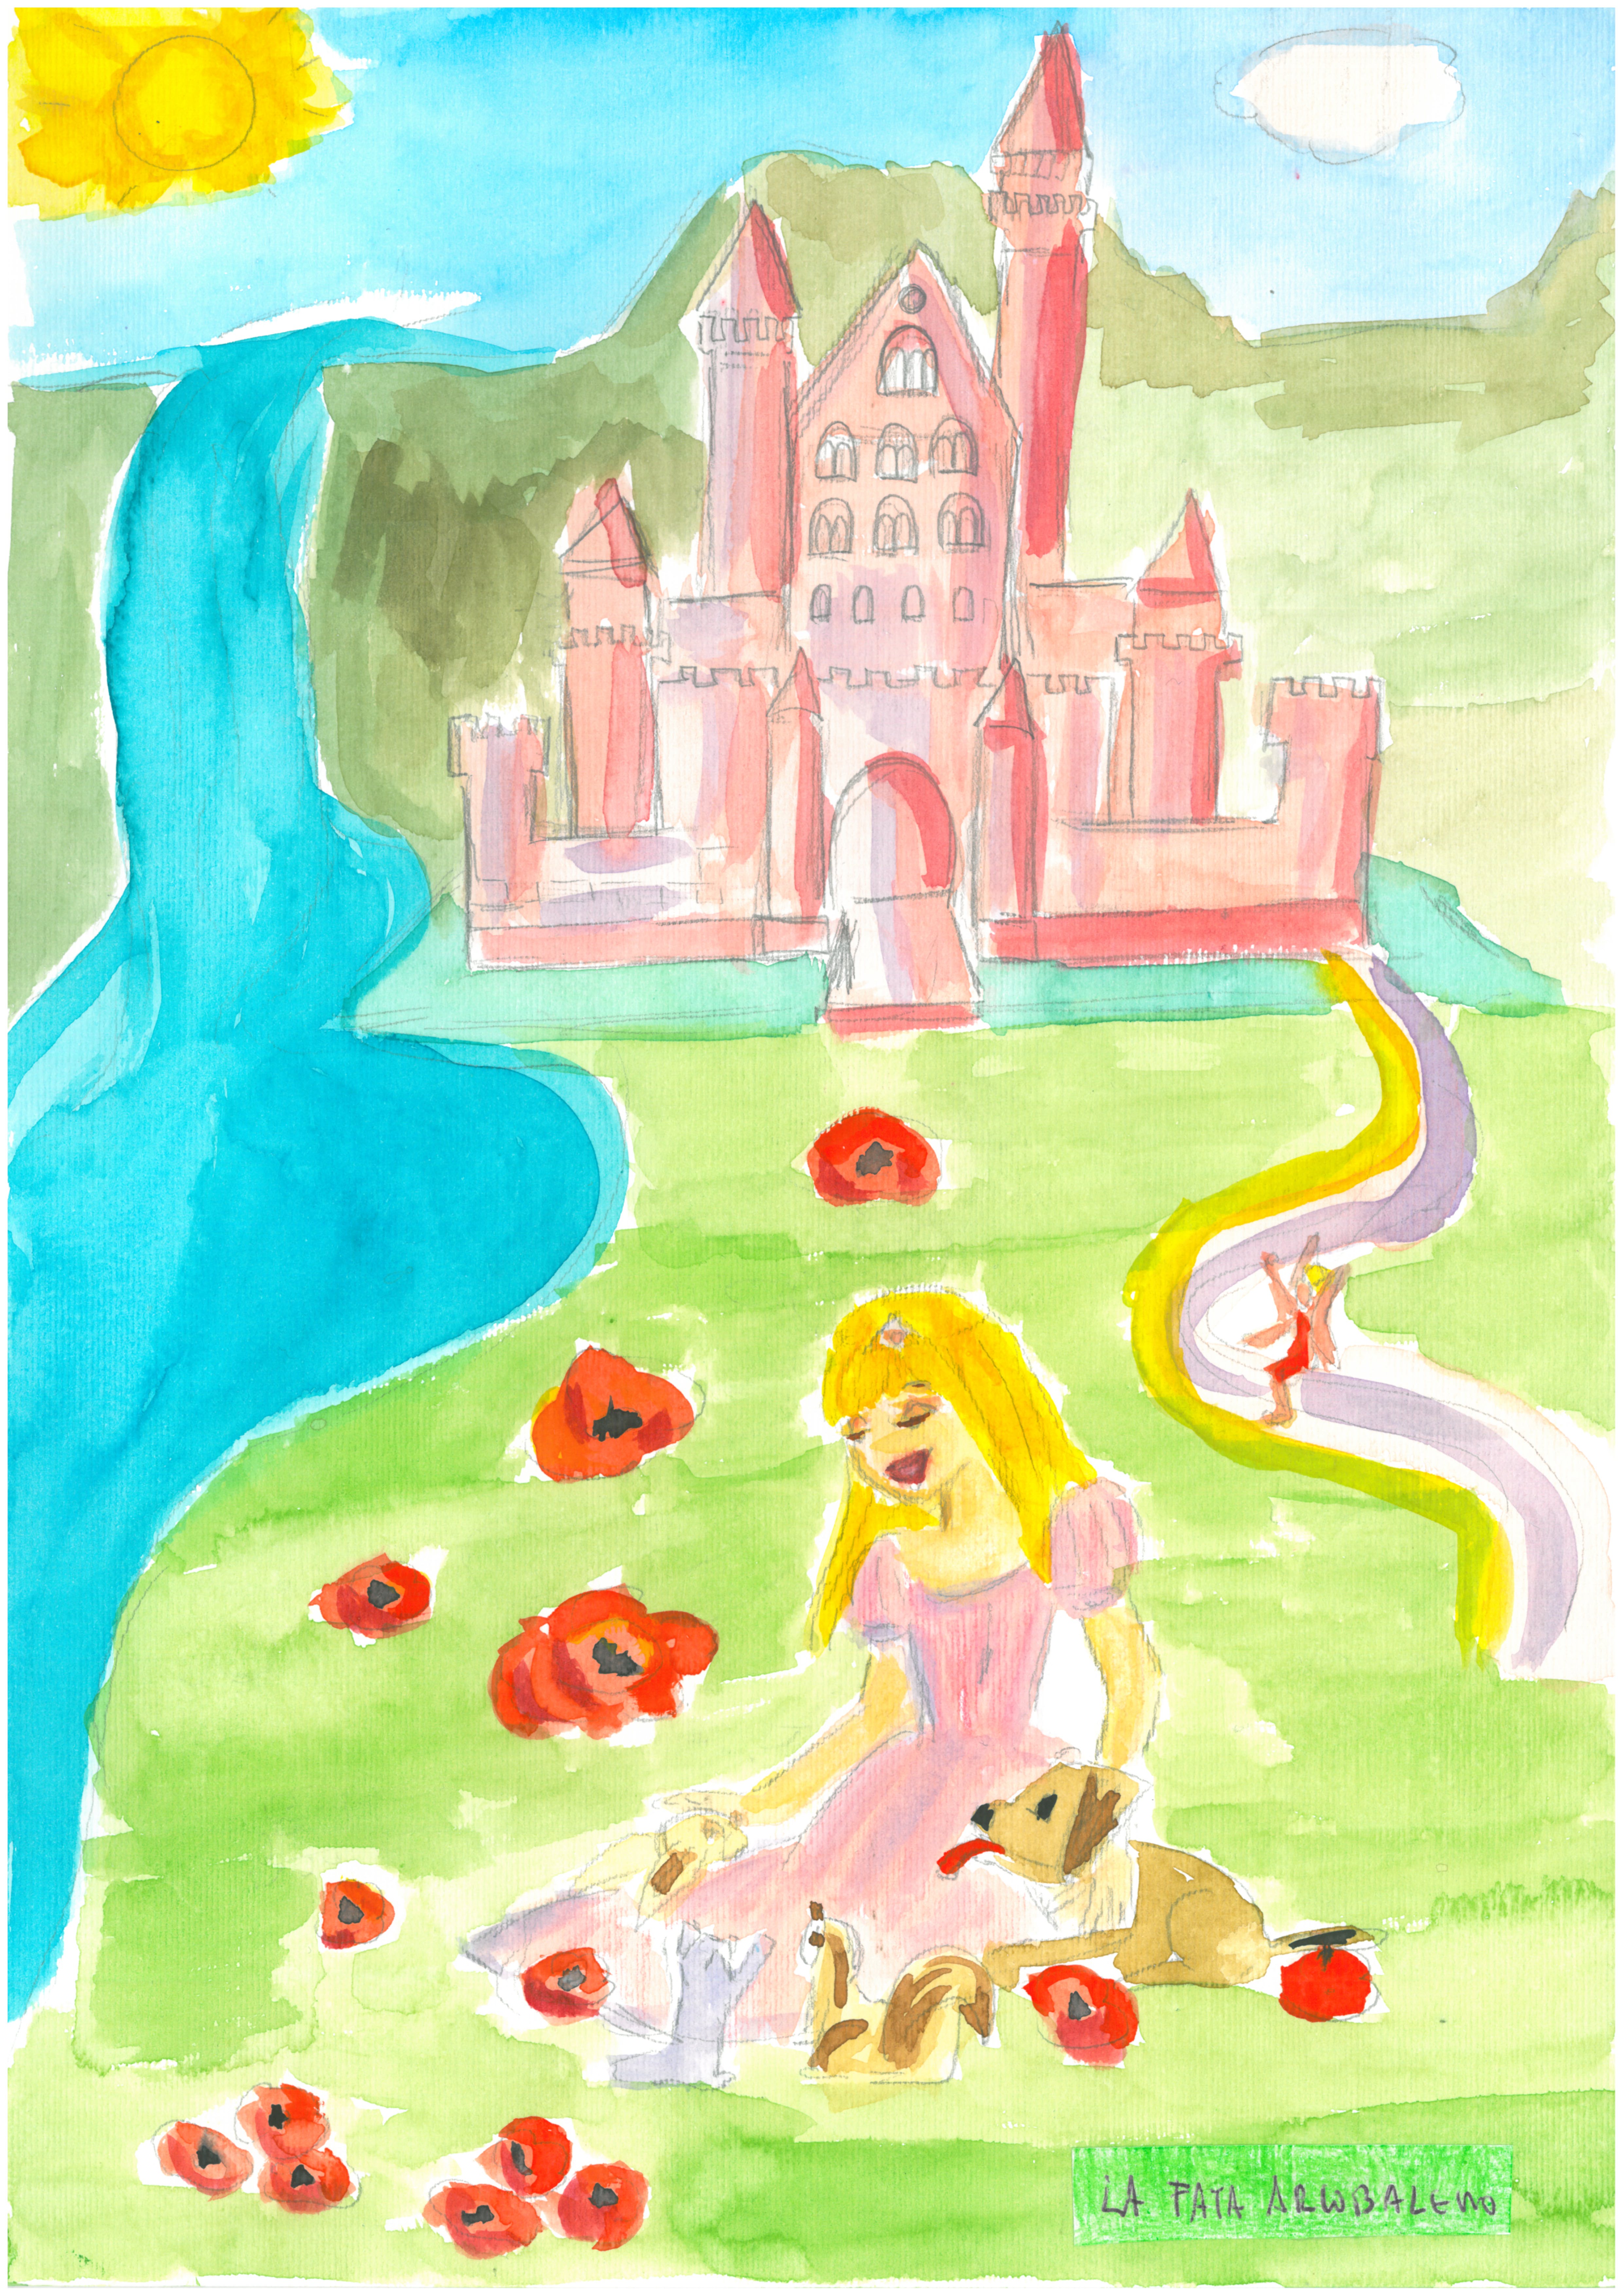 La Principessa Perla sorridente, seduta su un prato disseminato di papaveri davanti al castello, in compagnia dei suoi amici animali e della Fata Arcobaleno.